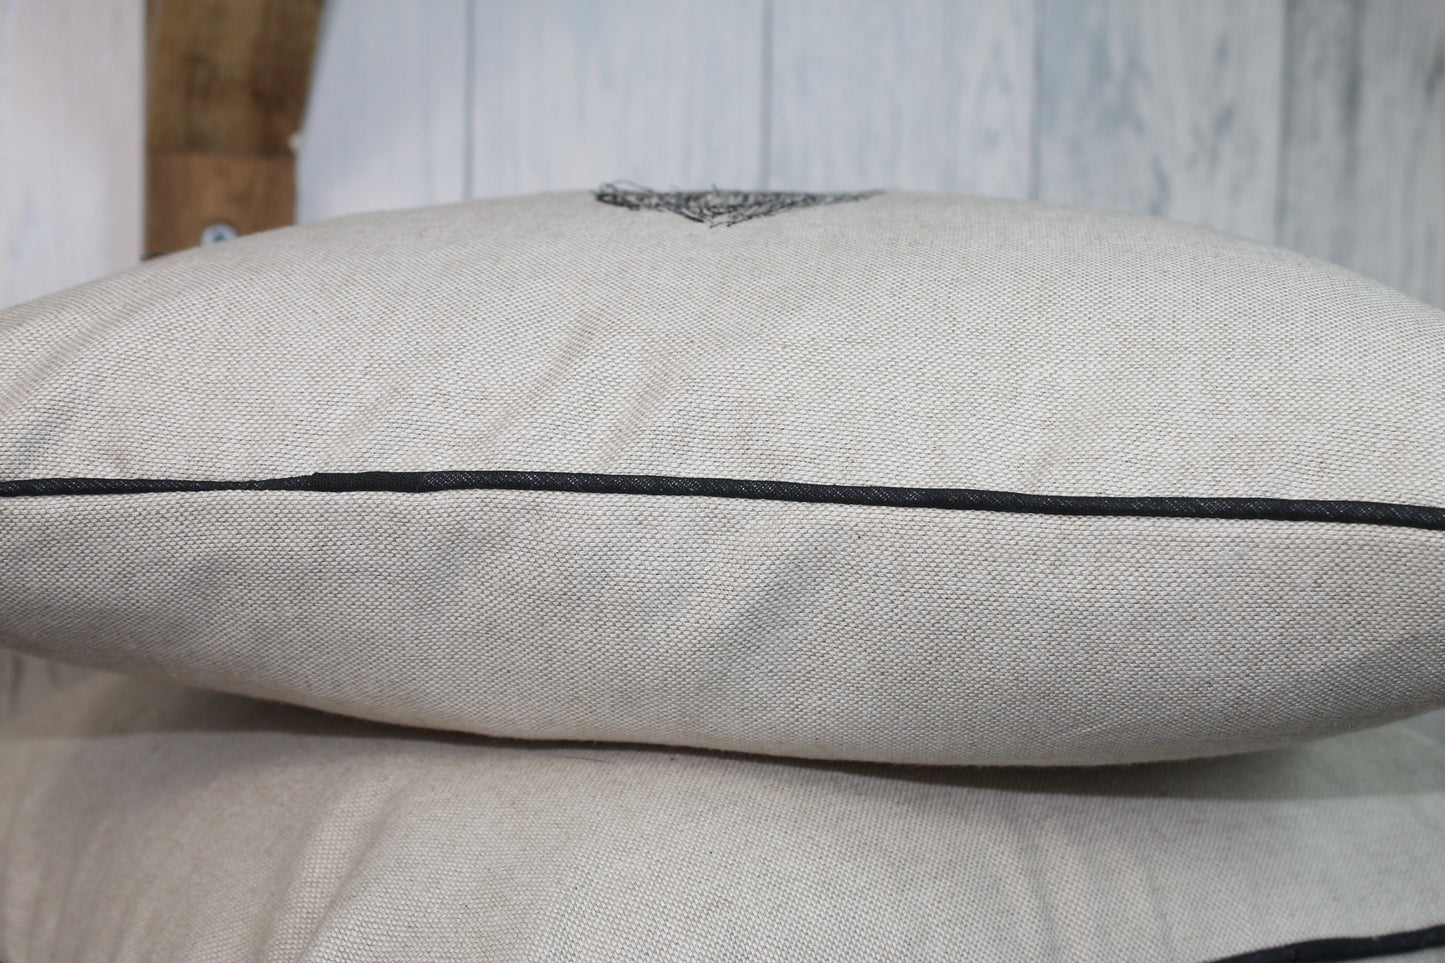 Pheasant Cushion- Cream/Taupe Piped Cushion - Lizzie Dixon Designs